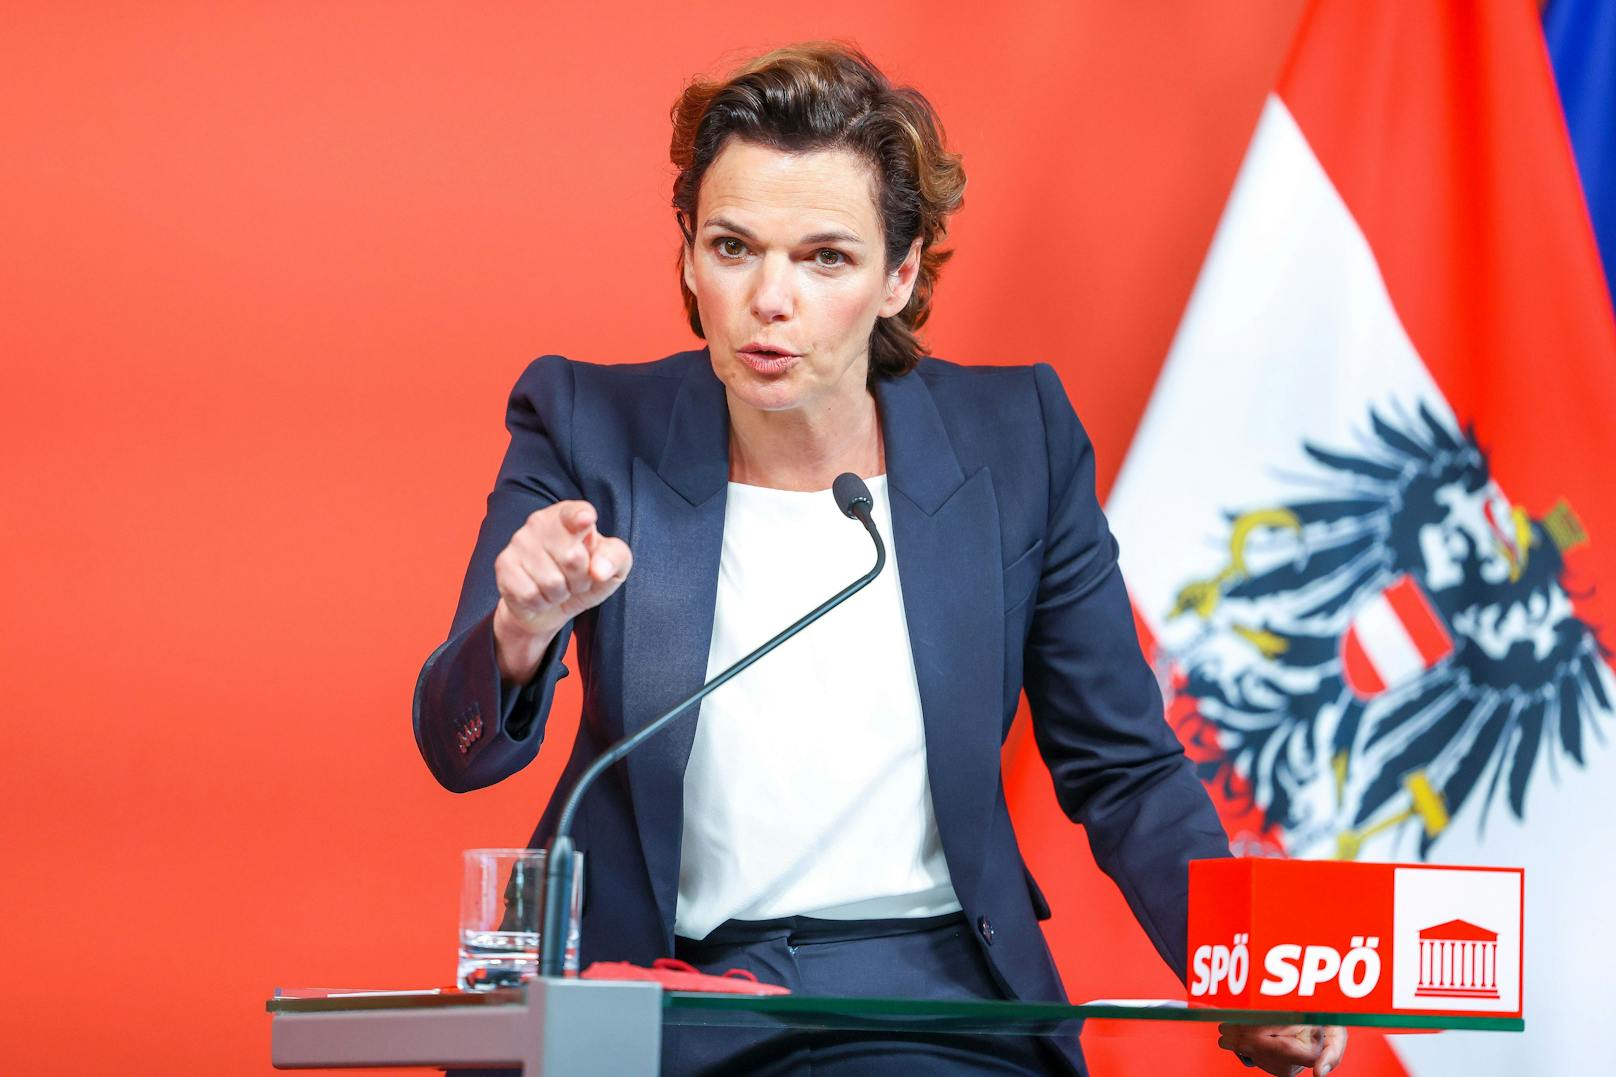 SPÖ-Chefin Pamela Rendi-Wagner fordert einen sofortigen Strompreisdeckel und die Abschöpfung von Unternehmensgewinnen.